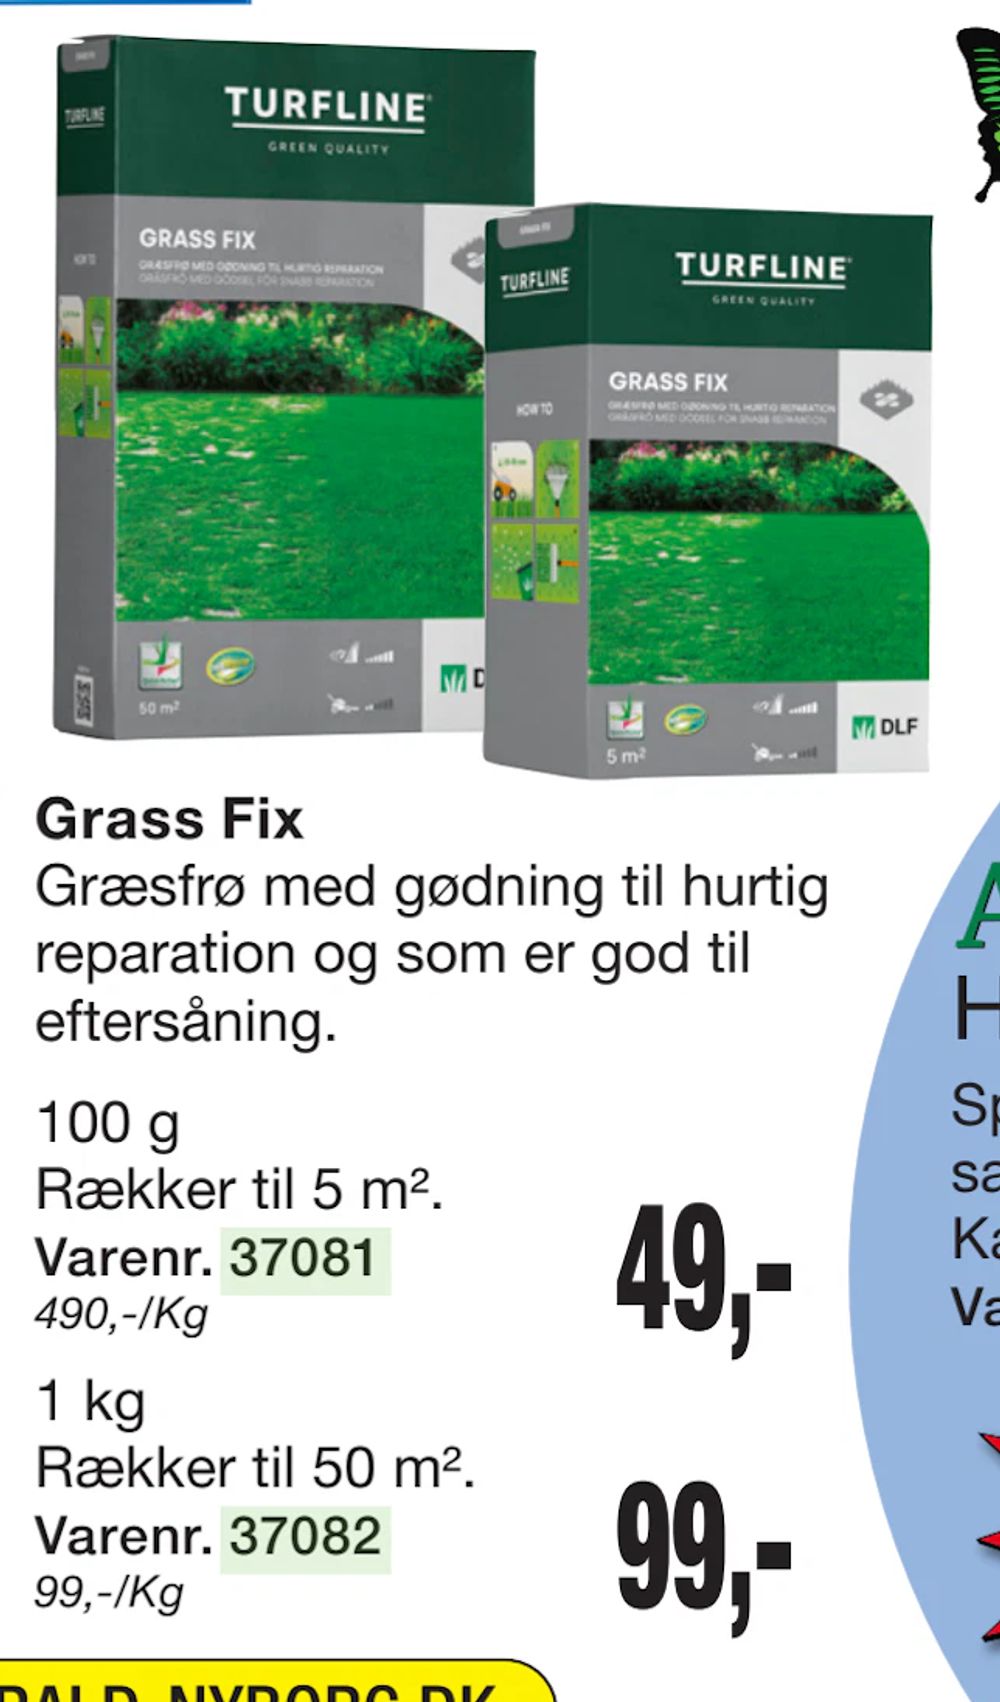 Tilbud på Grass Fix fra Harald Nyborg til 49 kr.